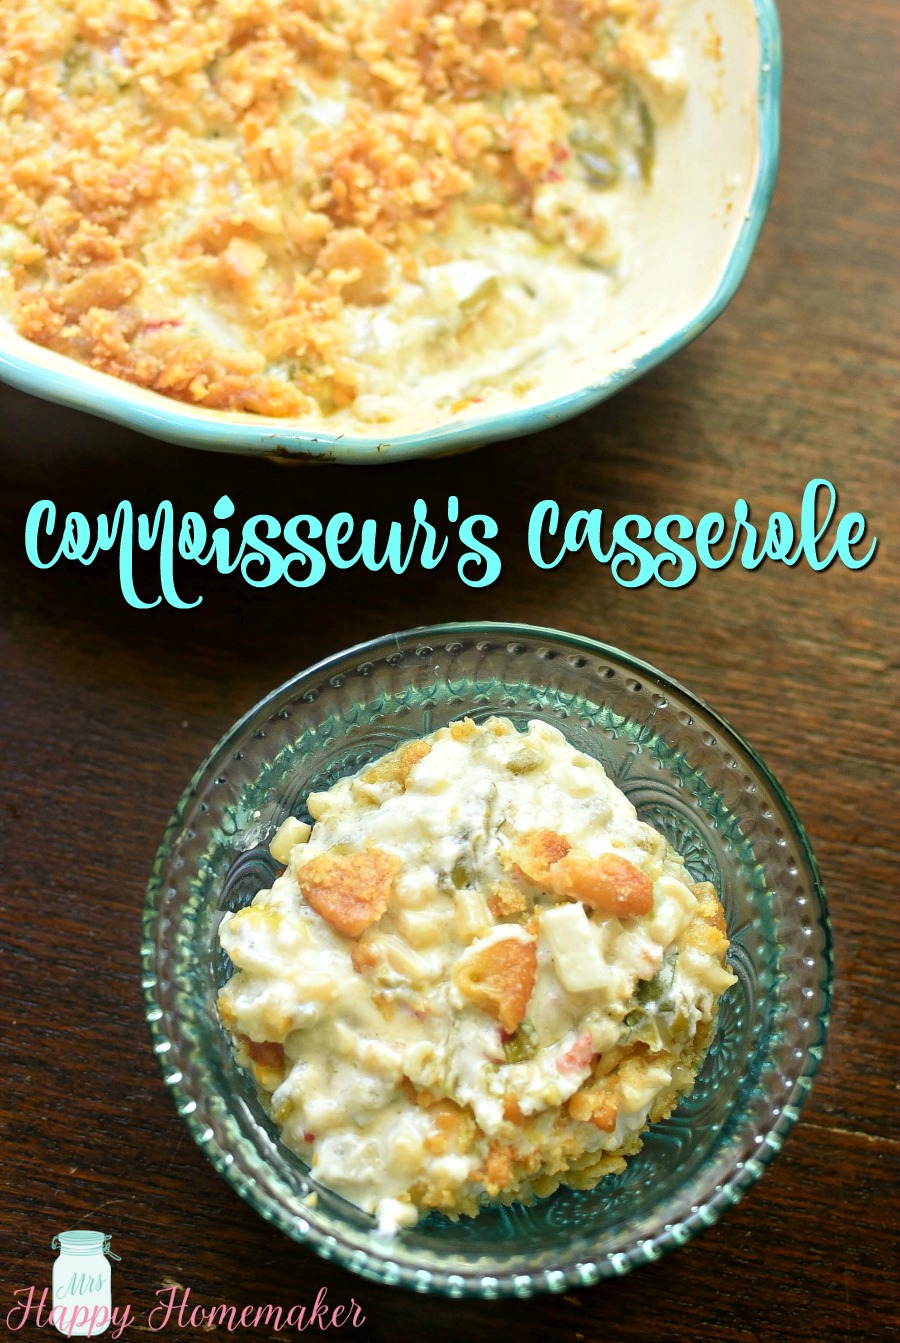 Connoisseur's Casserole